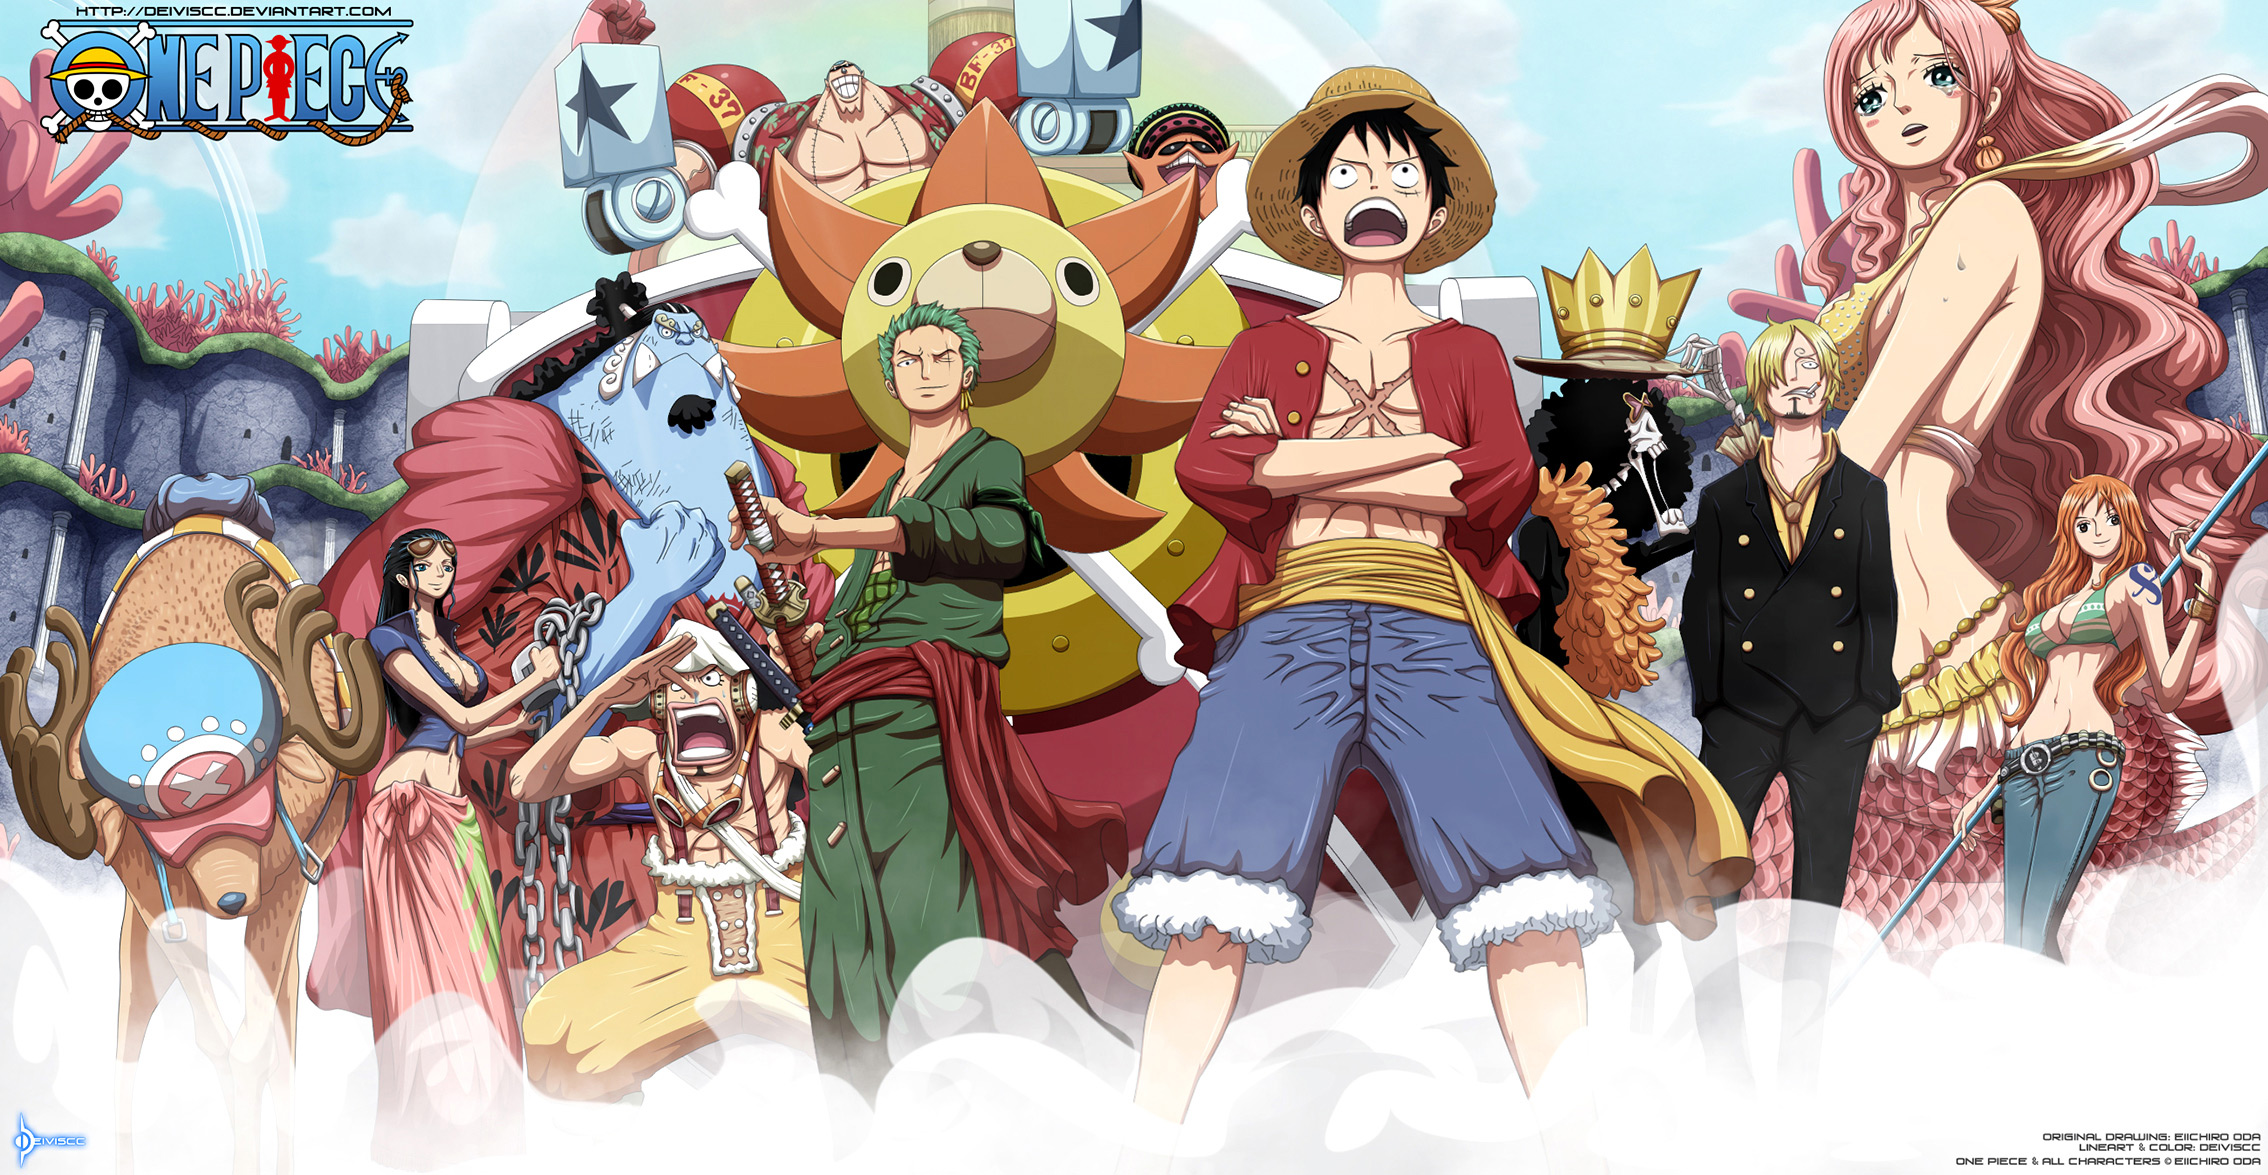 Nếu bạn là tín đồ của bộ truyện One Piece, bạn sẽ không thể bỏ qua bức ảnh kính Anime One Piece thiết kế tuyệt đẹp này. Như một bức tranh kính khổng lồ, bạn sẽ có cảm giác như đang đứng trong thế giới ngầm của các nhân vật trong One Piece. Hãy chiêm ngưỡng nó ngay bây giờ!